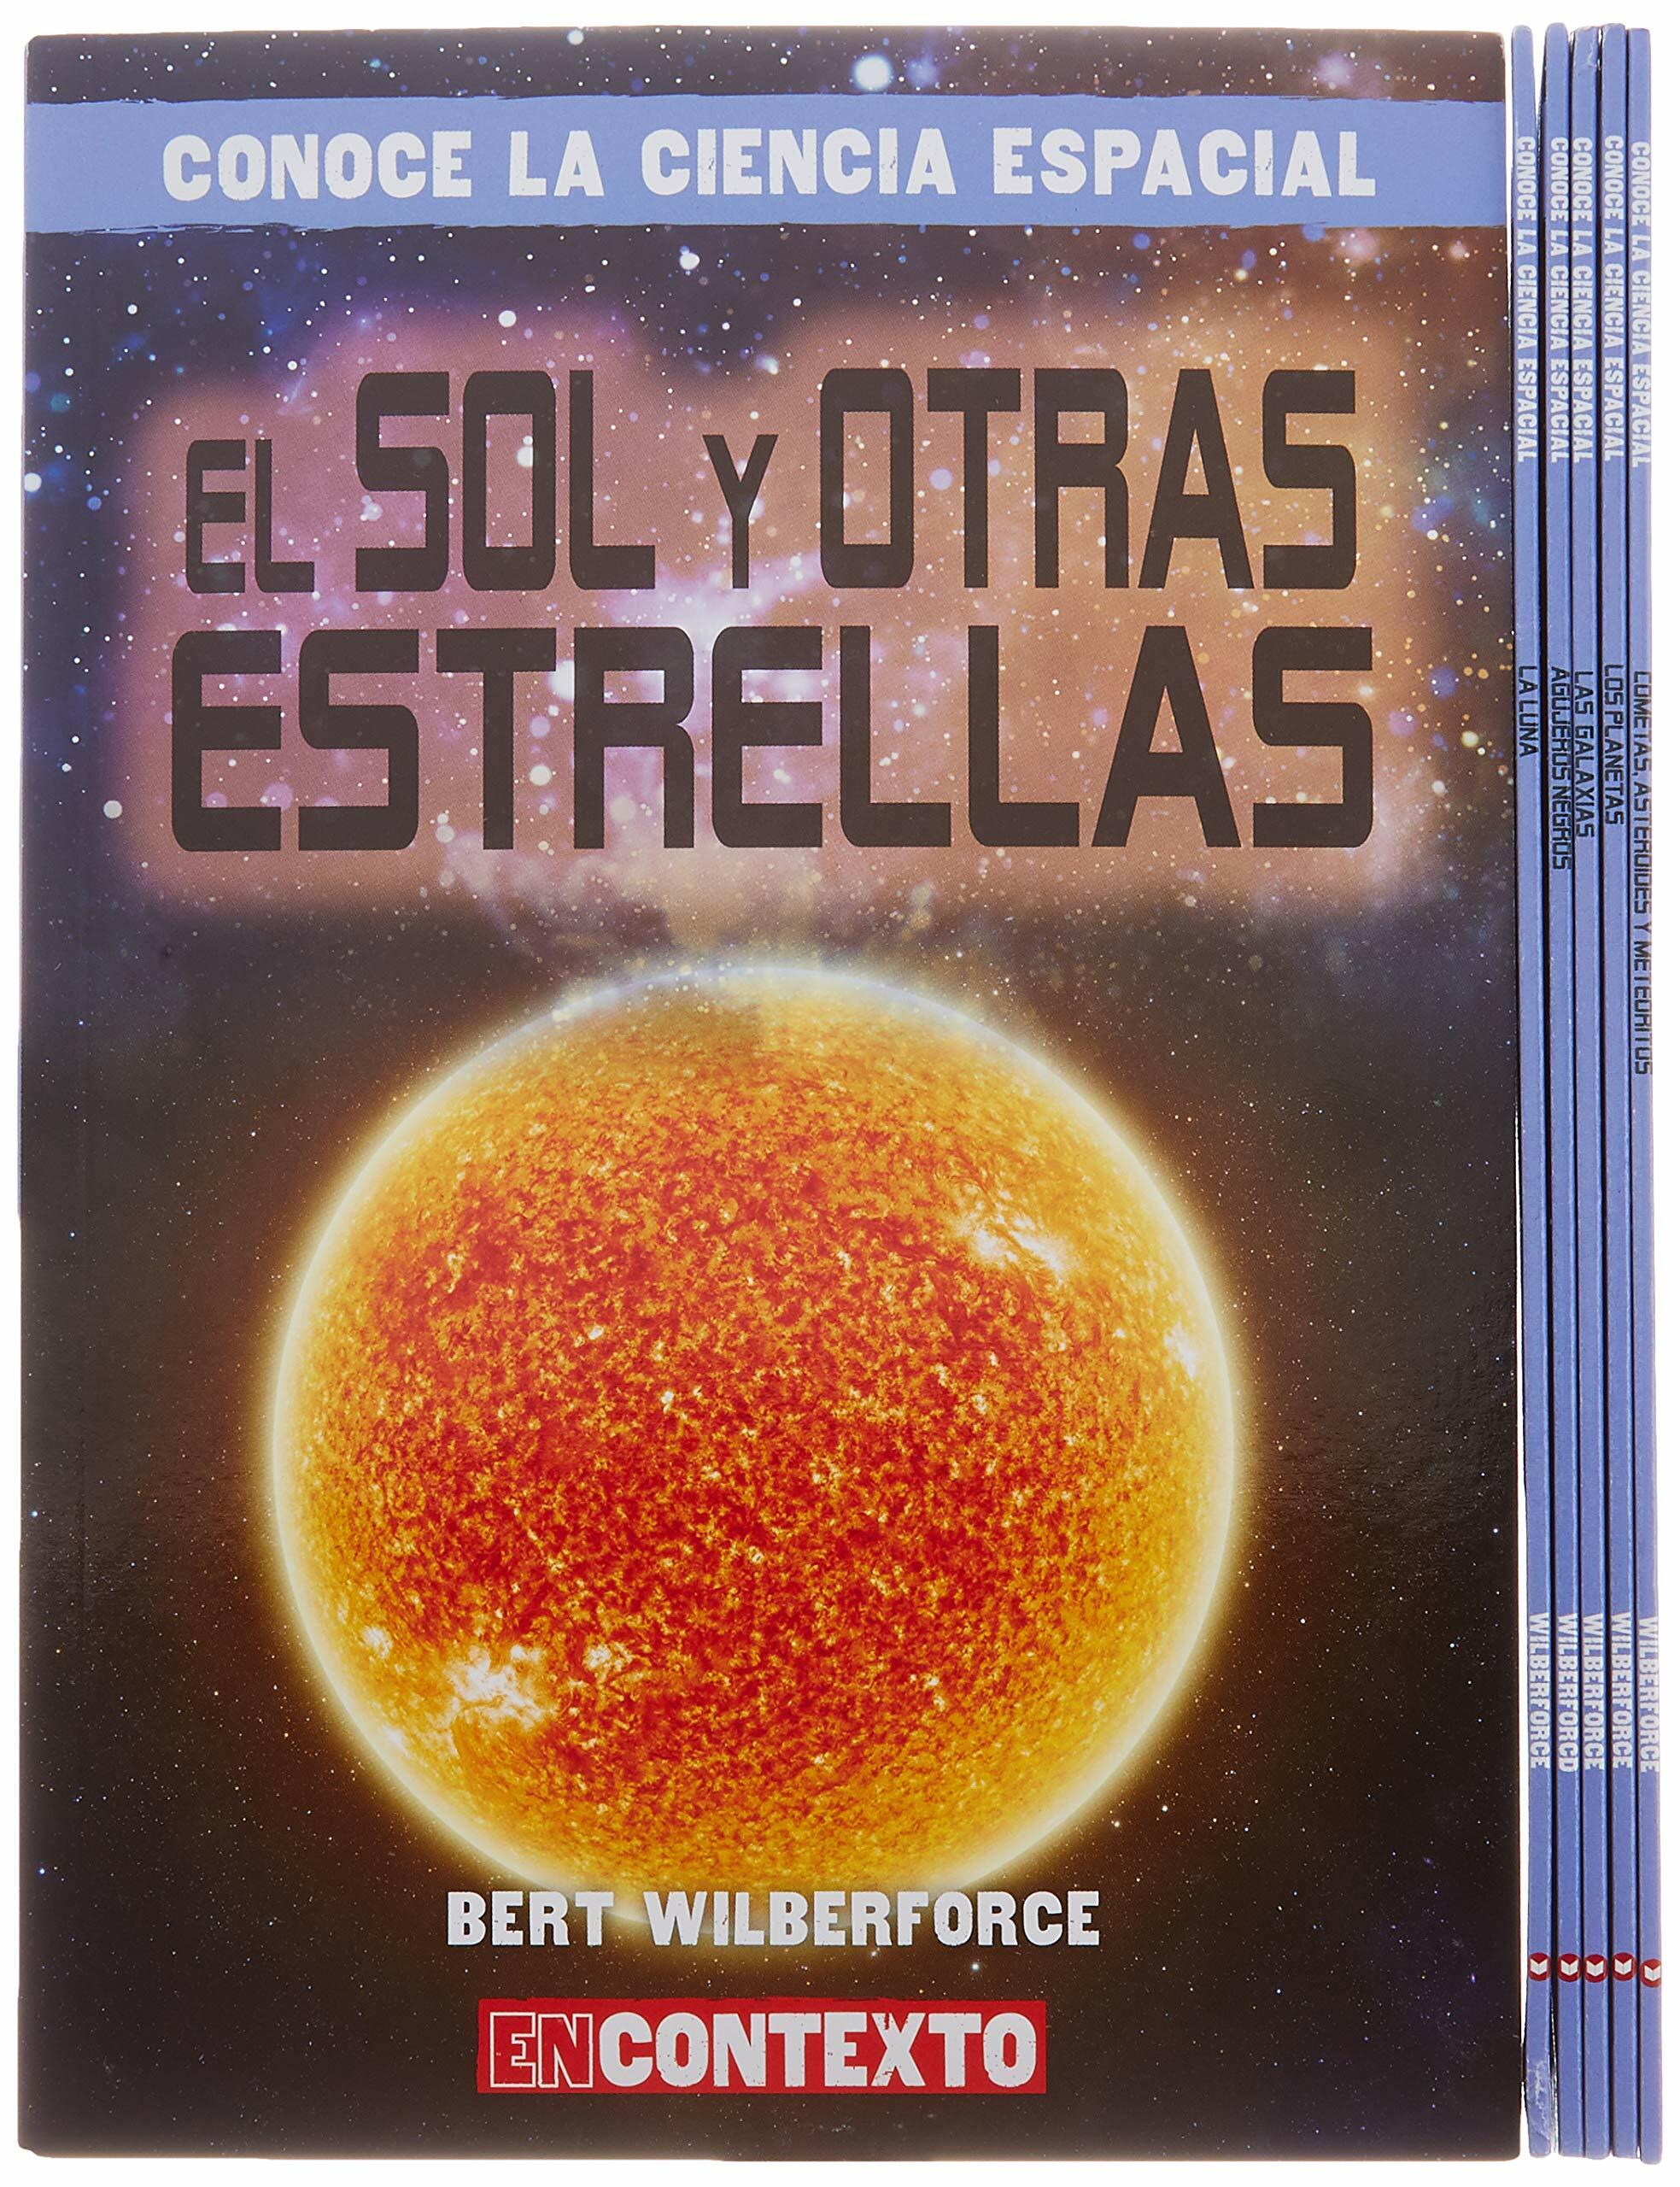 Conoce La Ciencia Espacial (a Look at Space Science) (Paperback)